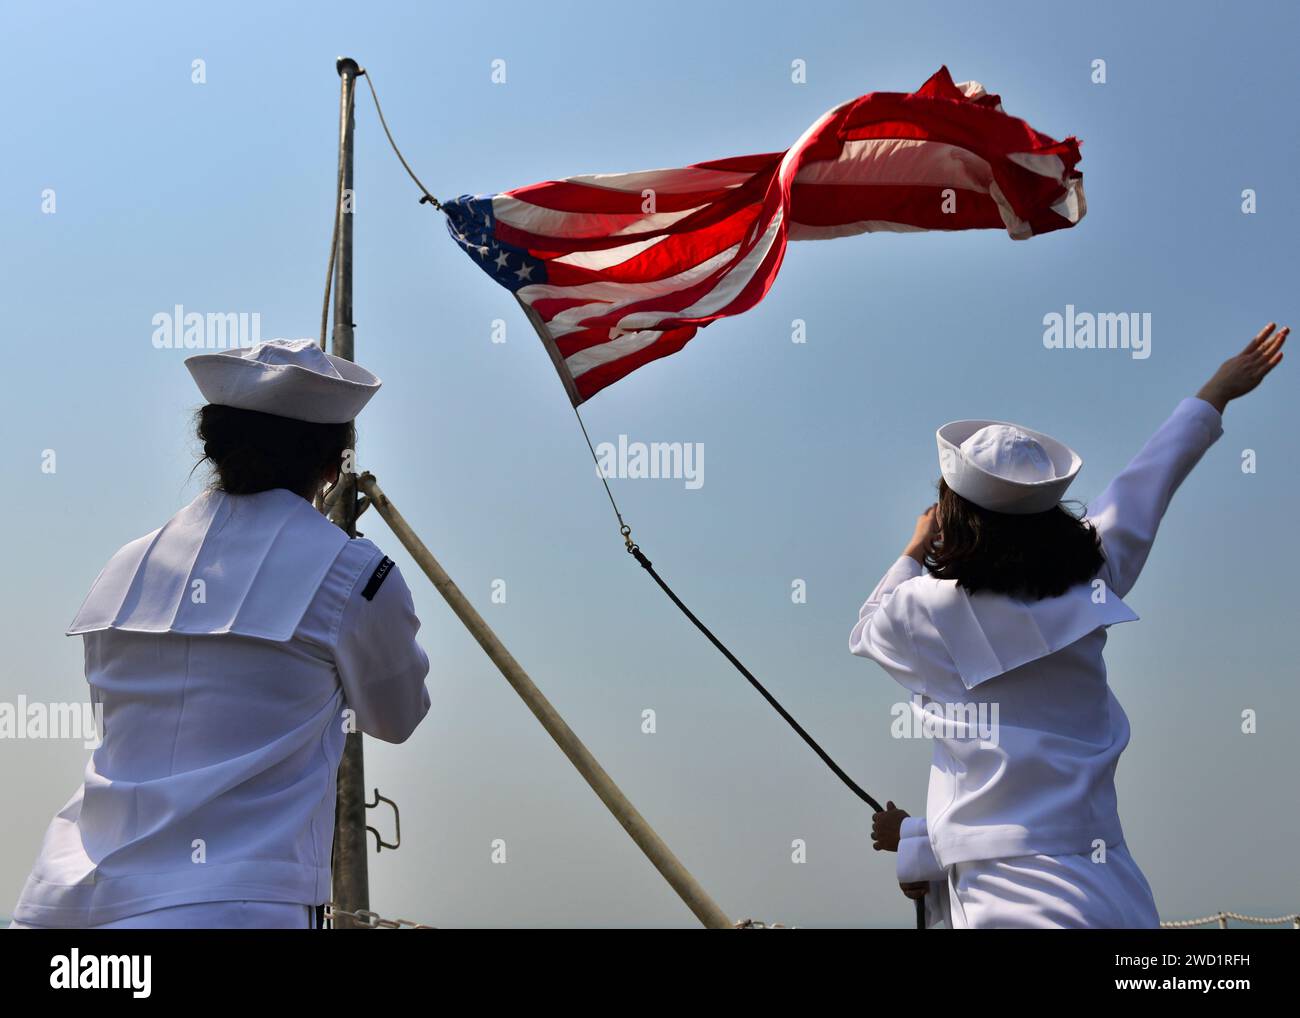 Die Matrosen heben die Fähnrich auf, während der Flugzeugträger USS Nimitz nach dem Festmachen in Bahrain die Farben wechselt. Stockfoto